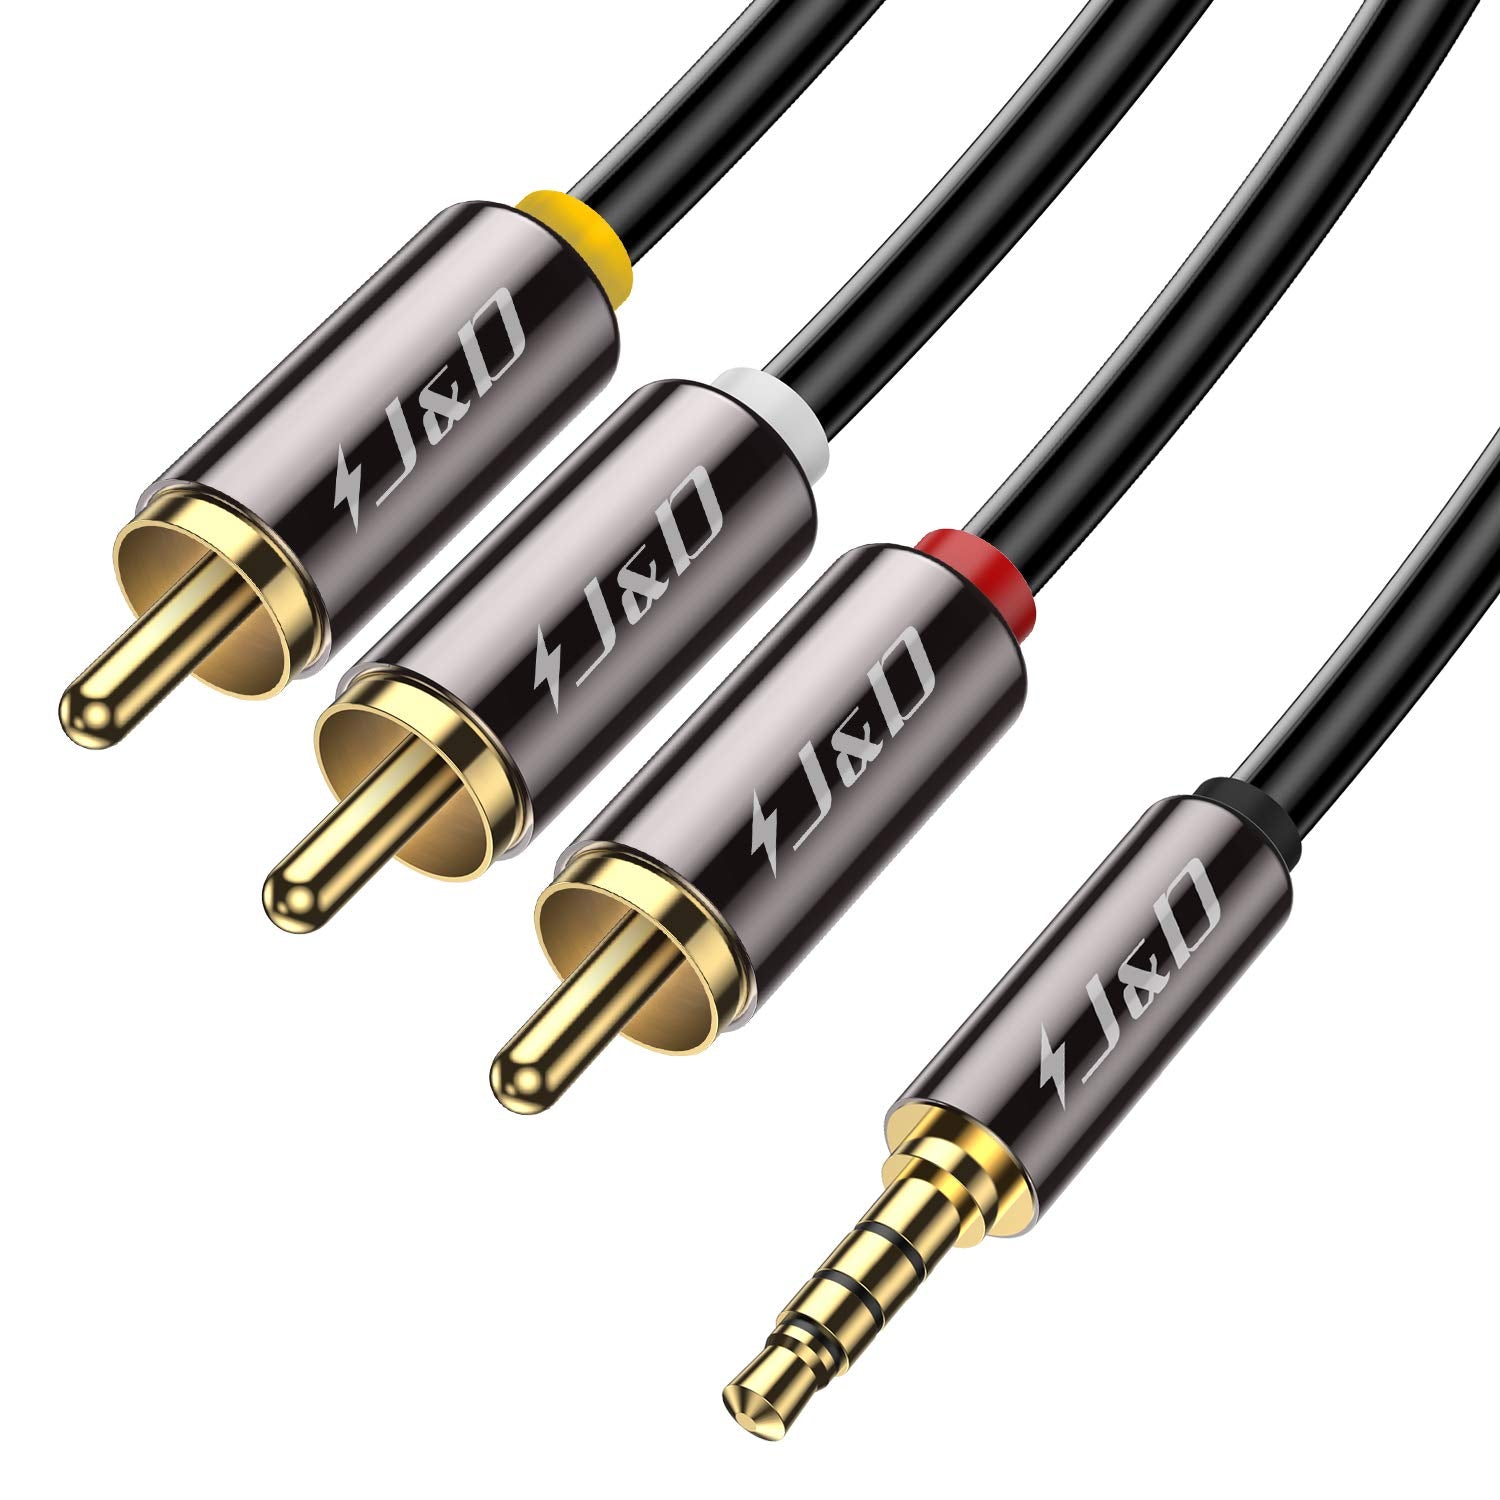 3.5 mm. MiniJack AV cable